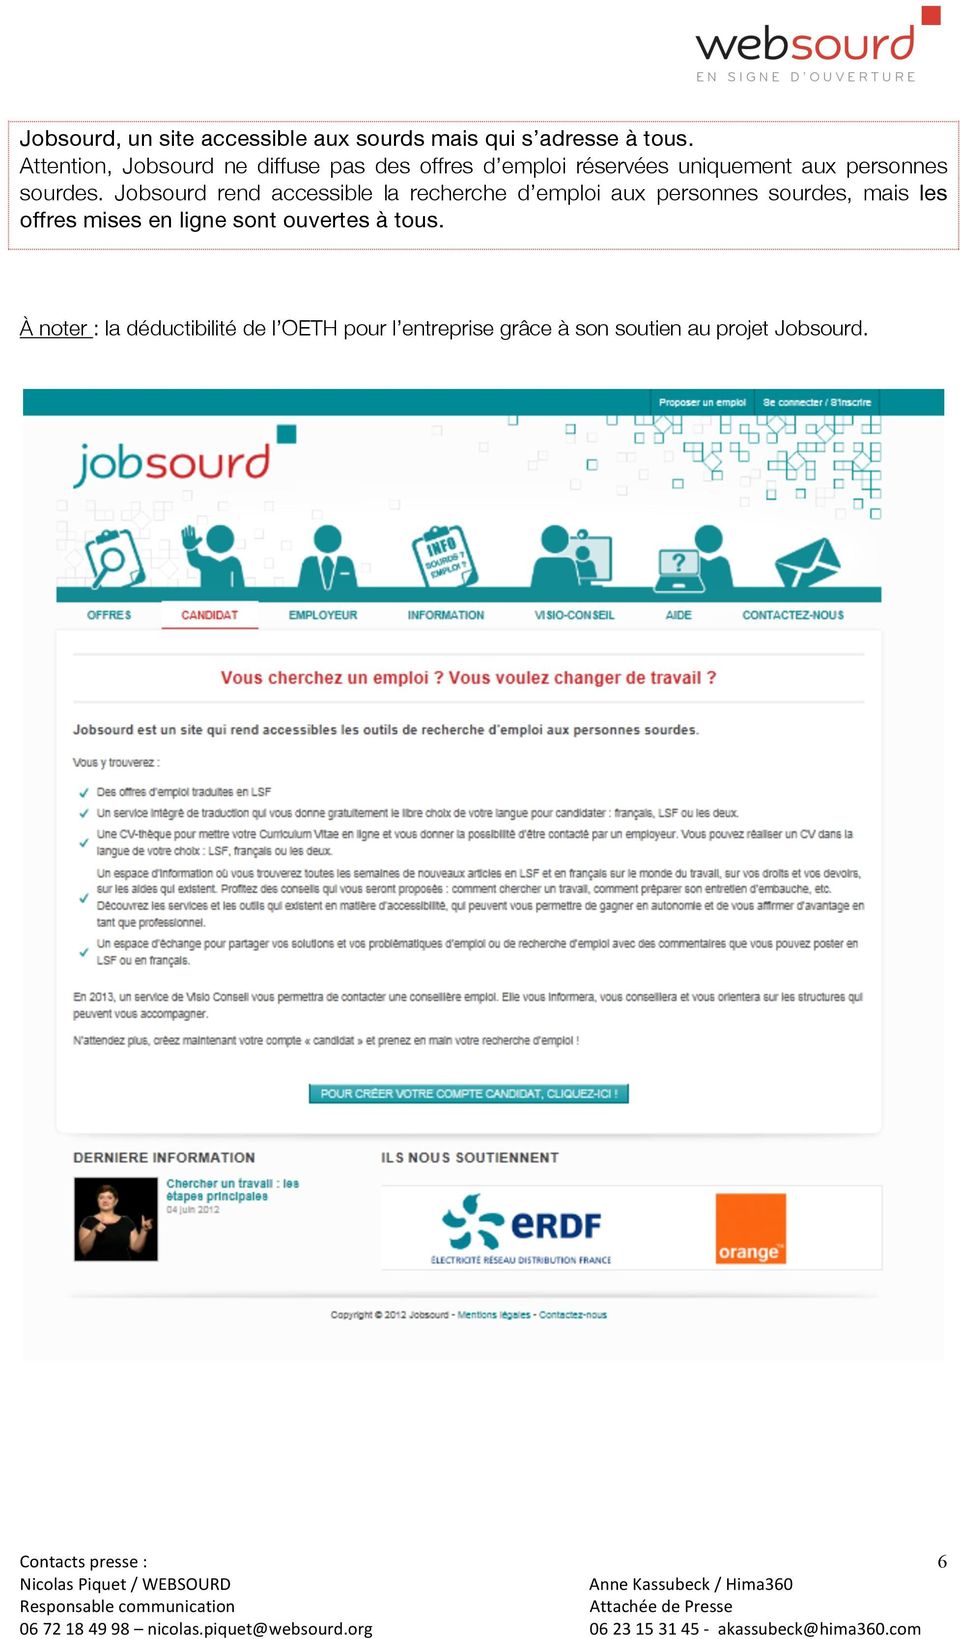 Jobsourd rend accessible la recherche d emploi aux personnes sourdes, mais les offres mises en ligne